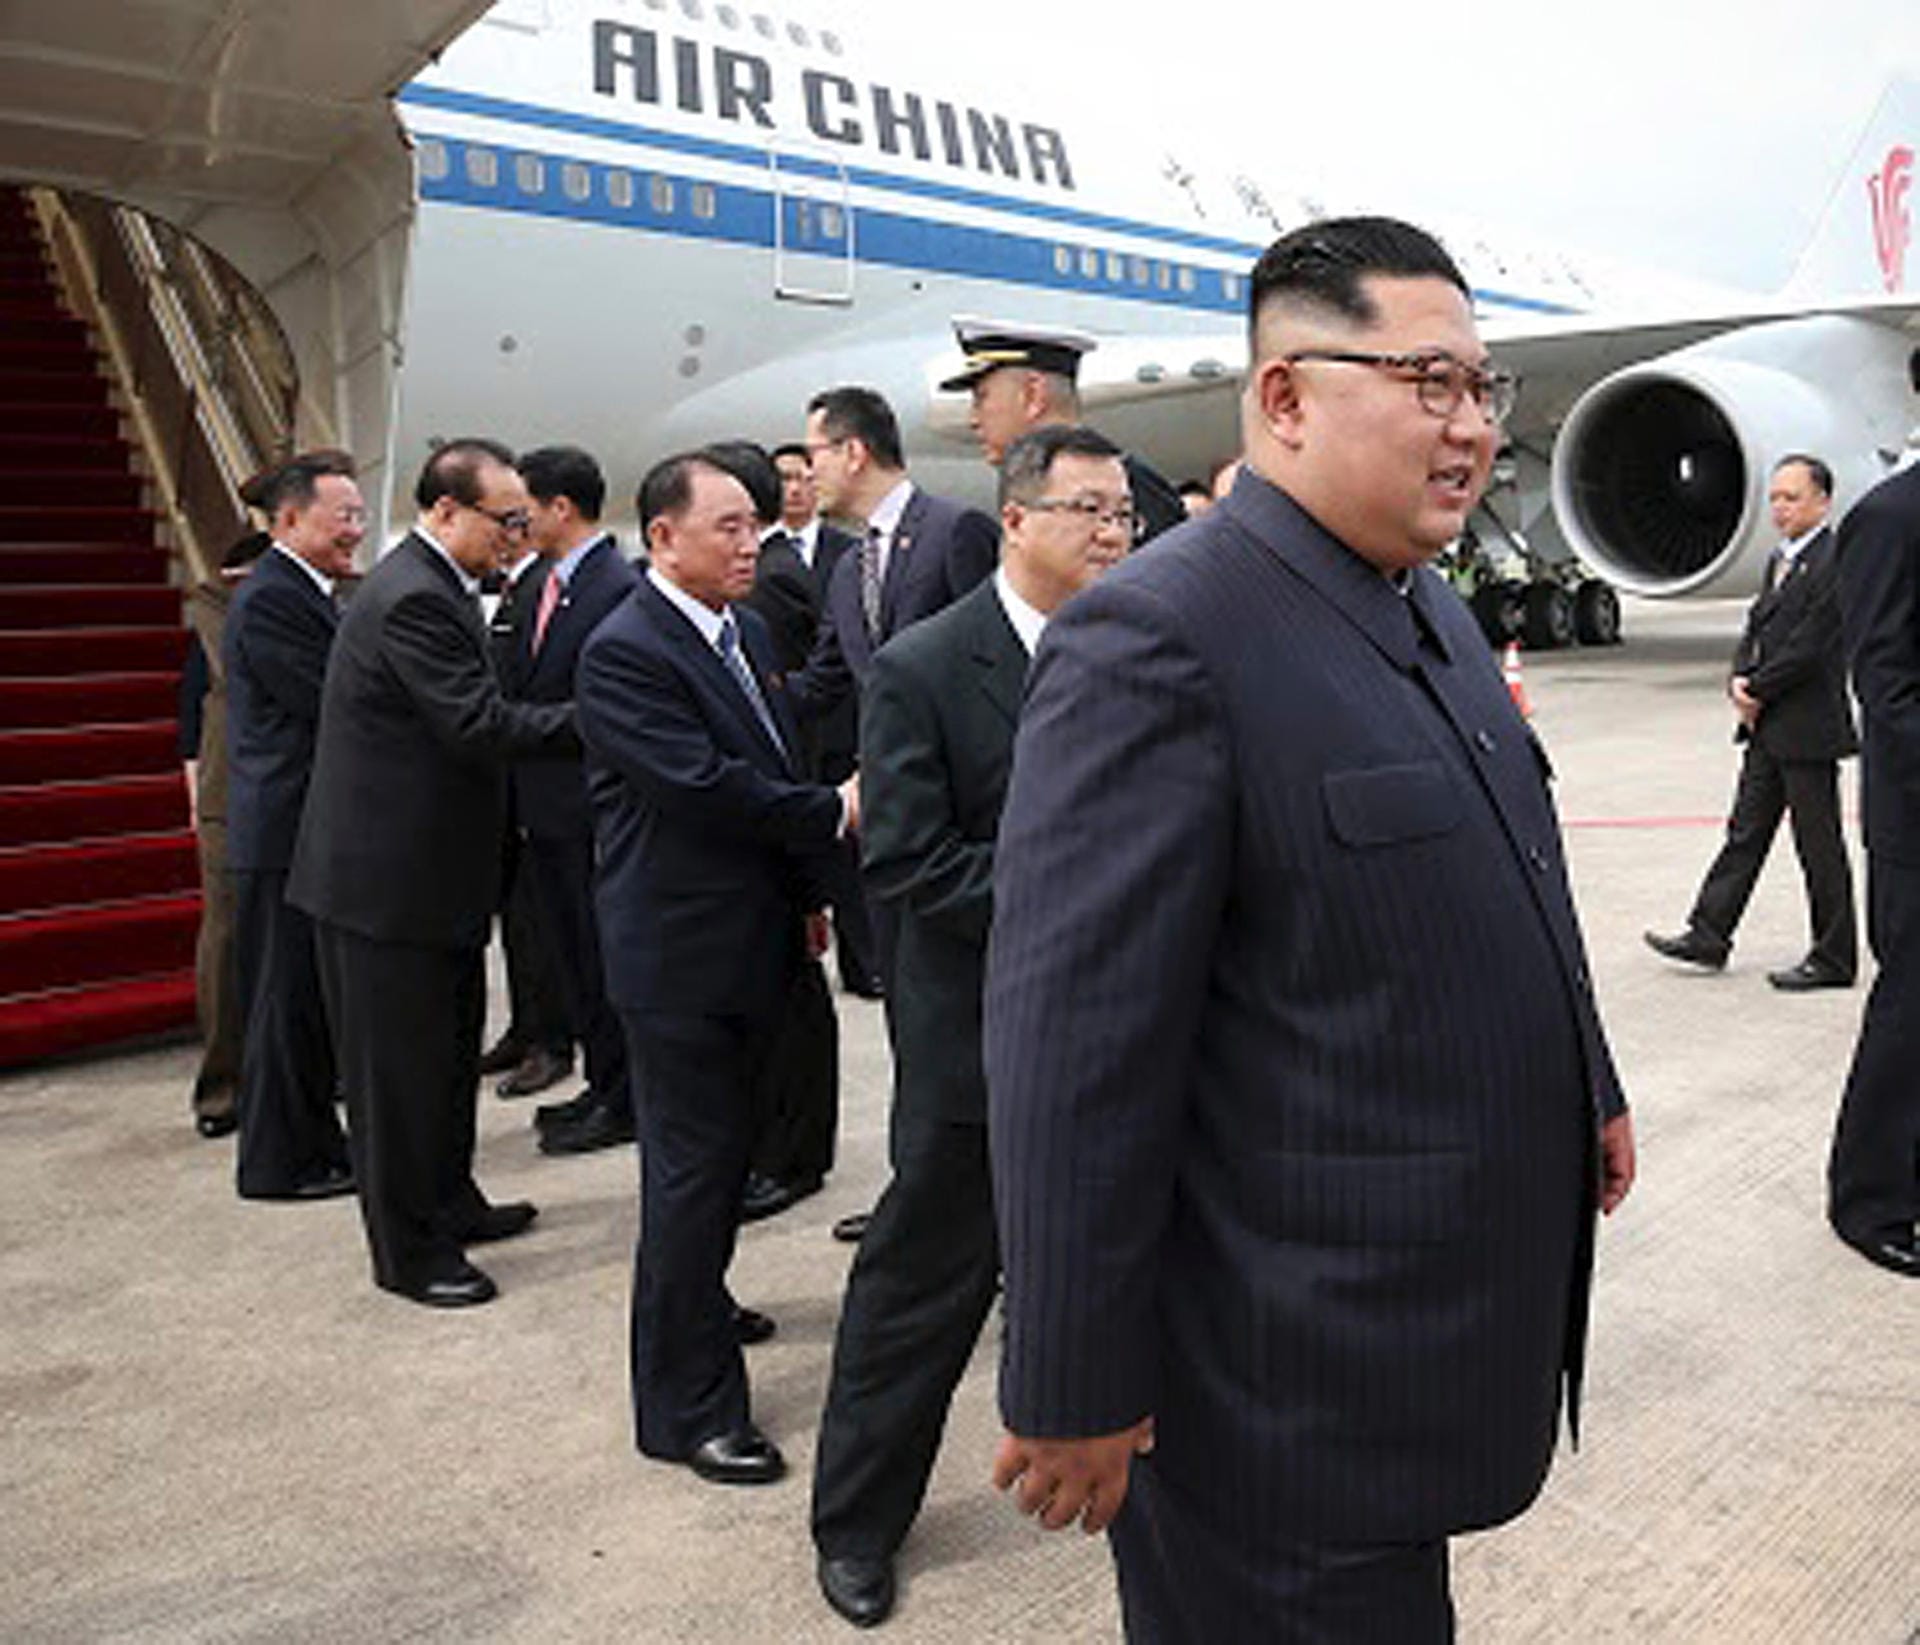 Ankuft von Nordkoreas Machthaber Kim Jong Un am Changi-Flughafen in Singapur.